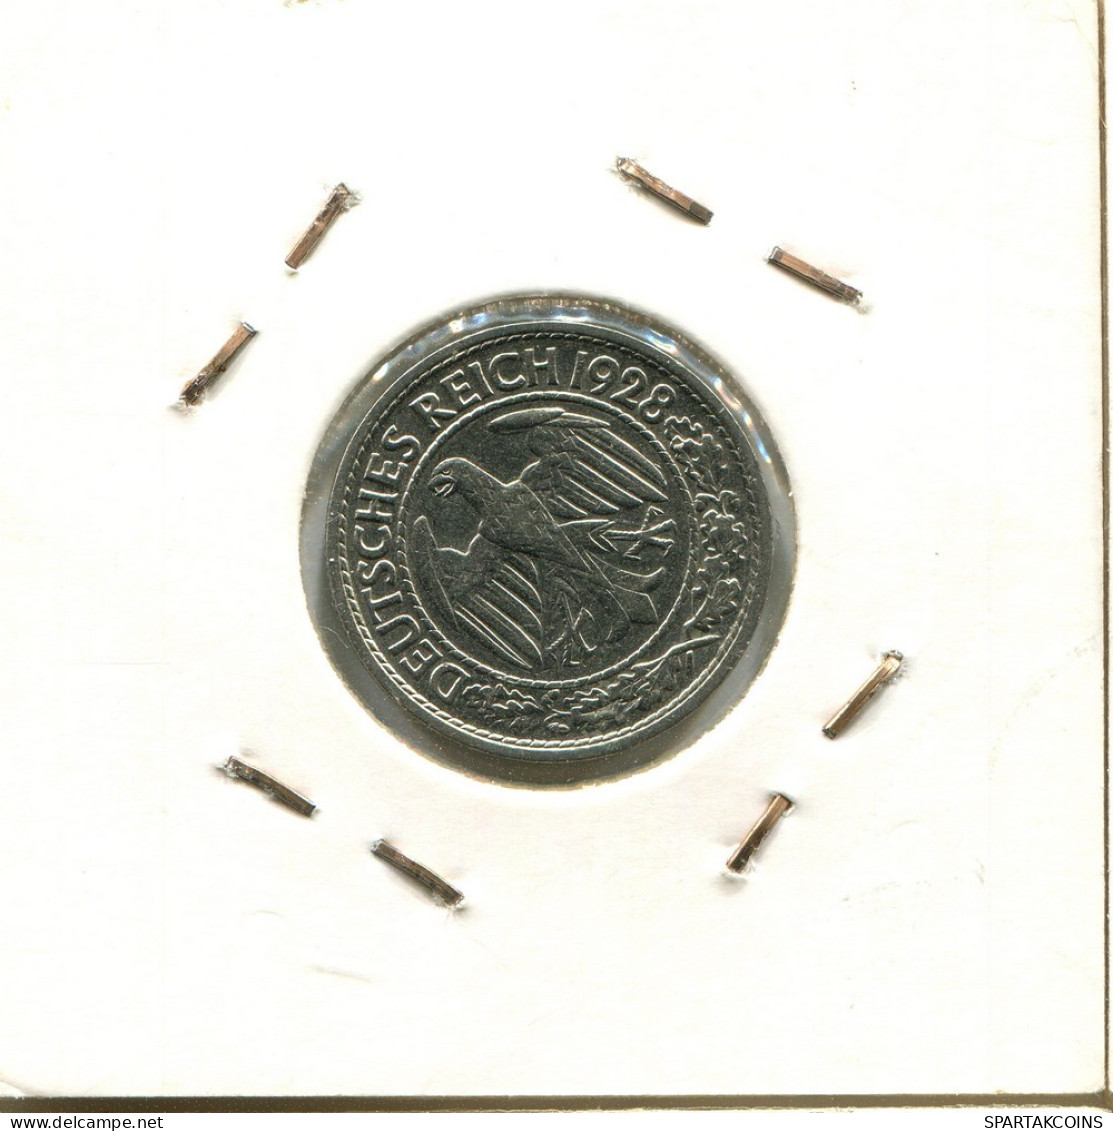 50 REICHSPFENNIG 1928 A ALEMANIA Moneda GERMANY #DB981.E.A - 50 Renten- & 50 Reichspfennig